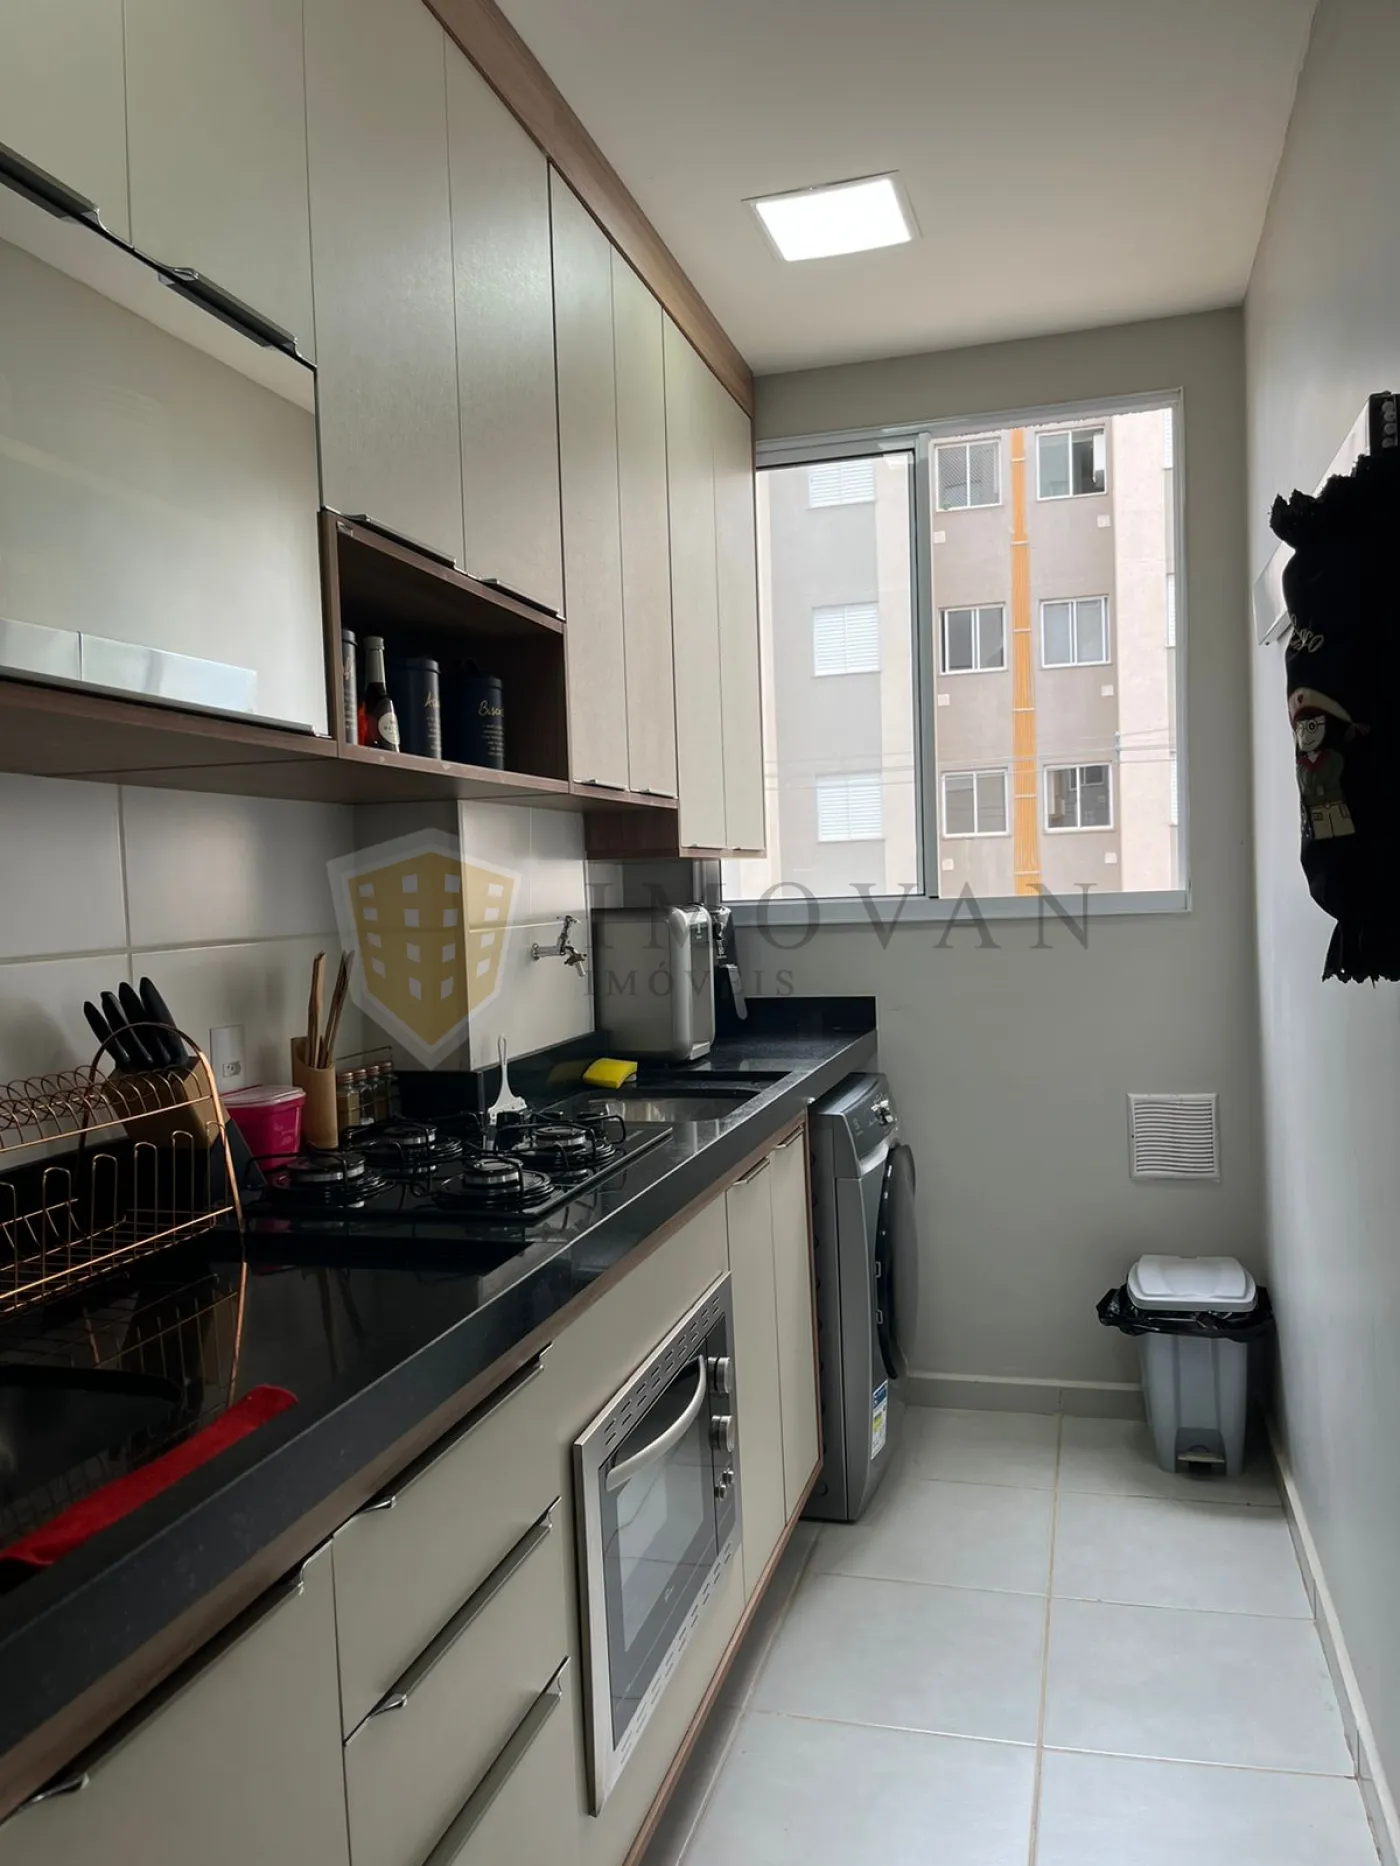 Comprar Apartamento / Padrão em Ribeirão Preto R$ 260.000,00 - Foto 3